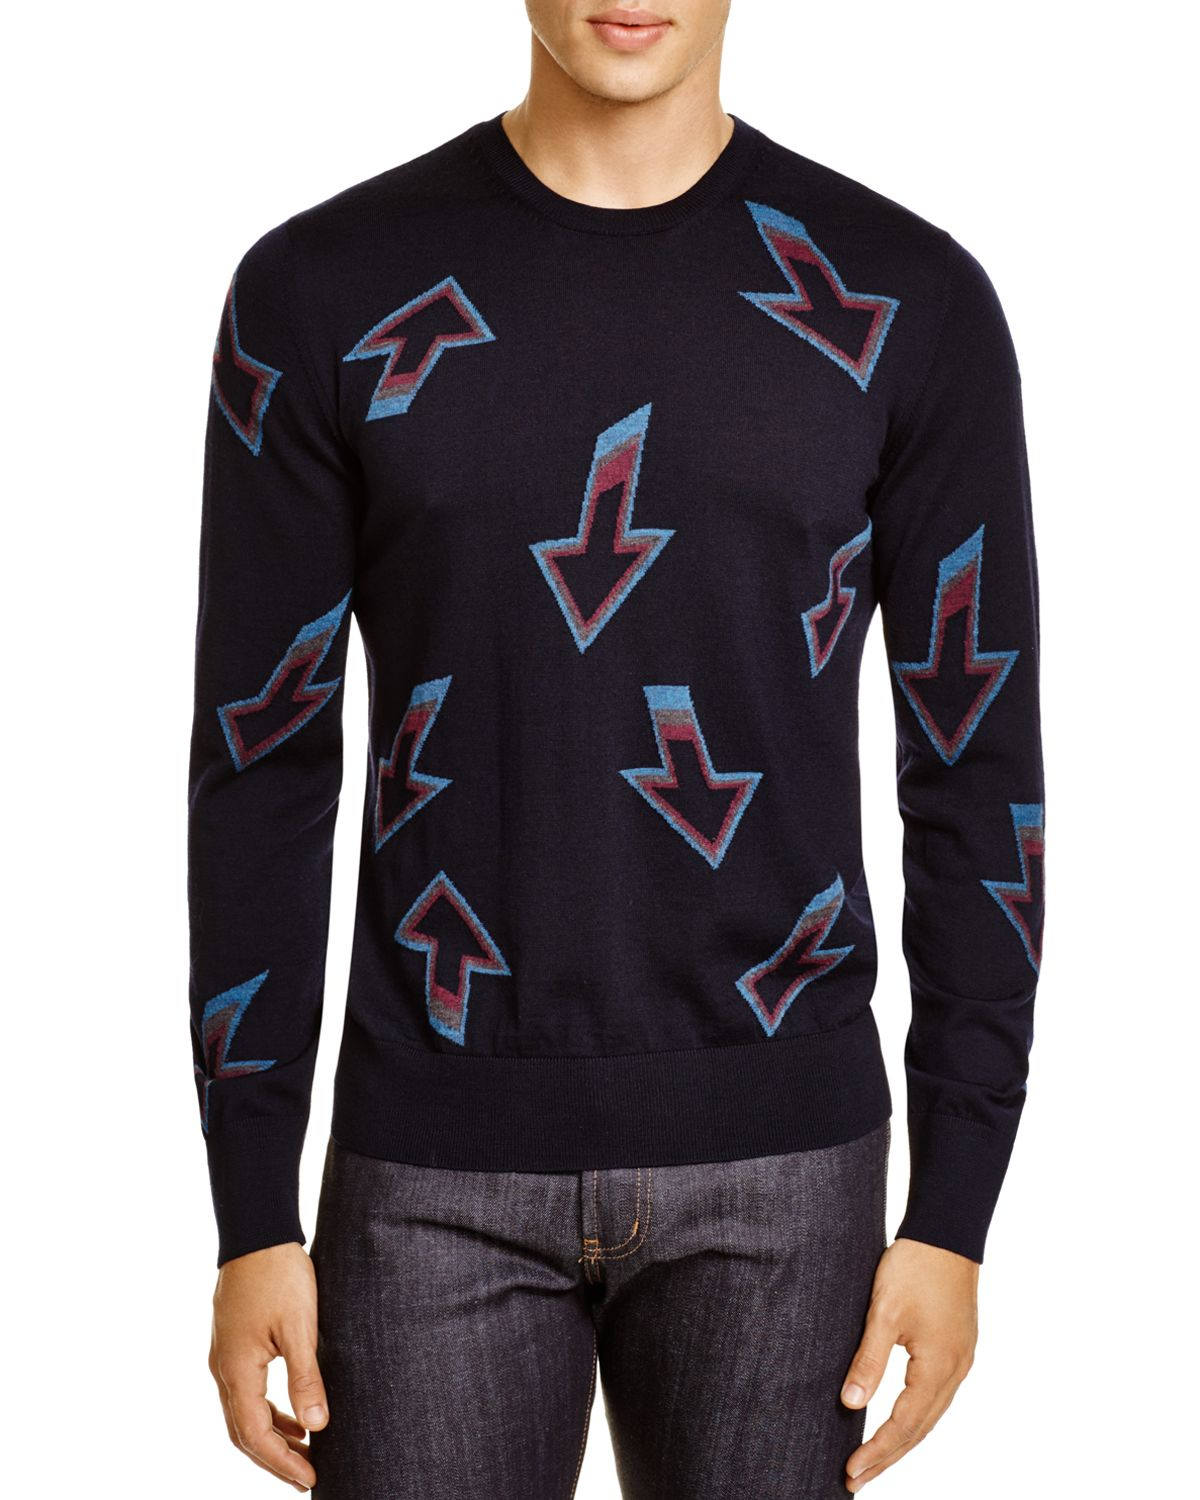 Paul Smith Wool Knit Arrow Sweater in Navy (Blue) - Lyst